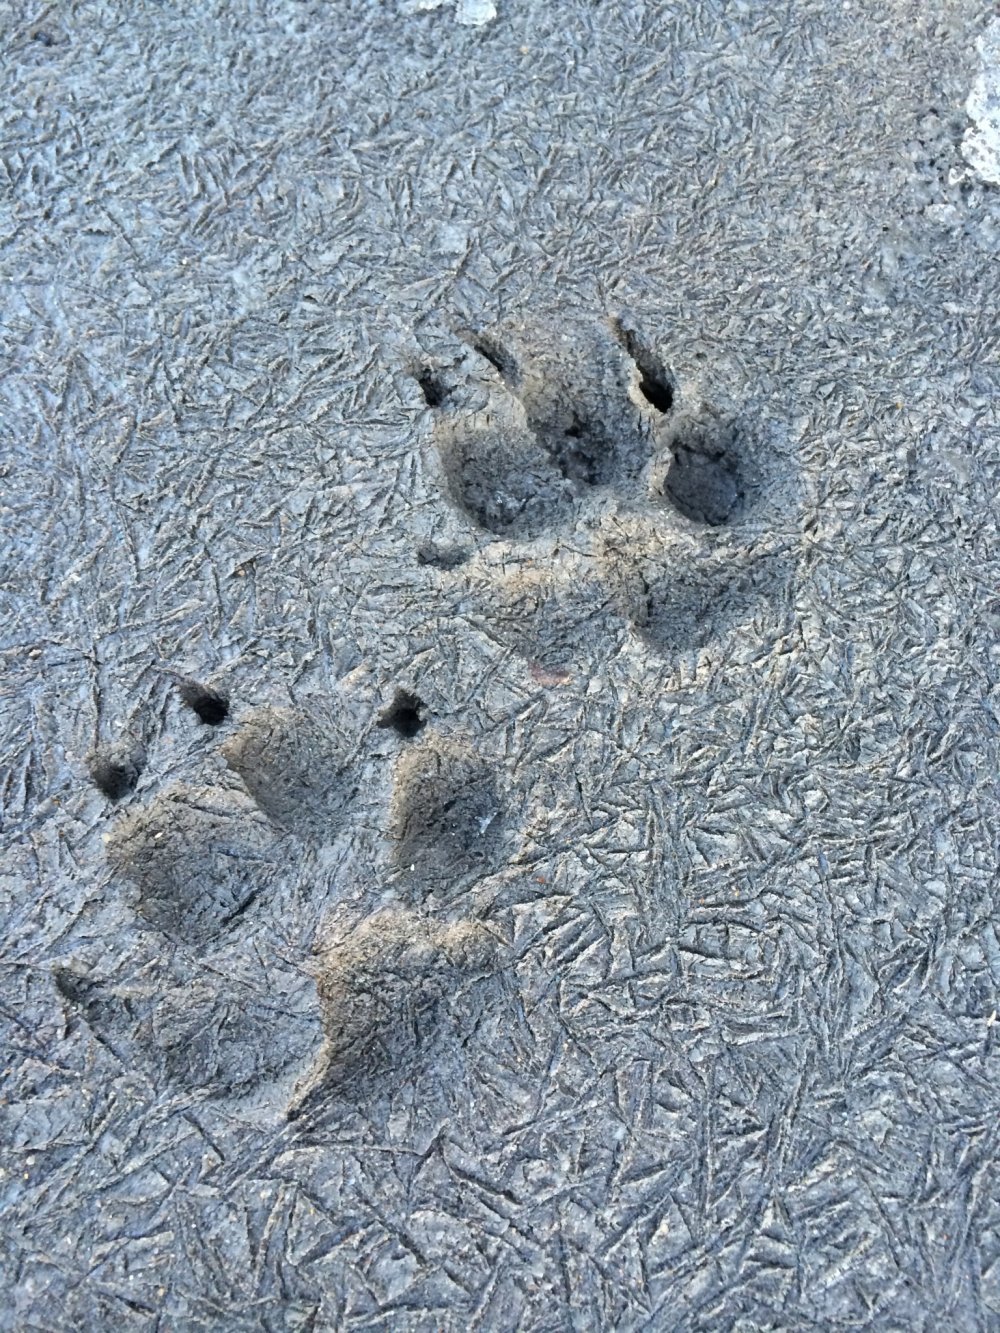 Có lẽ là một chú chó đi dạo vào một ngày lạnh giá - ta có thể nhìn thấy dấu chân của nó vì không có tuyết phủ trên mặt đất!